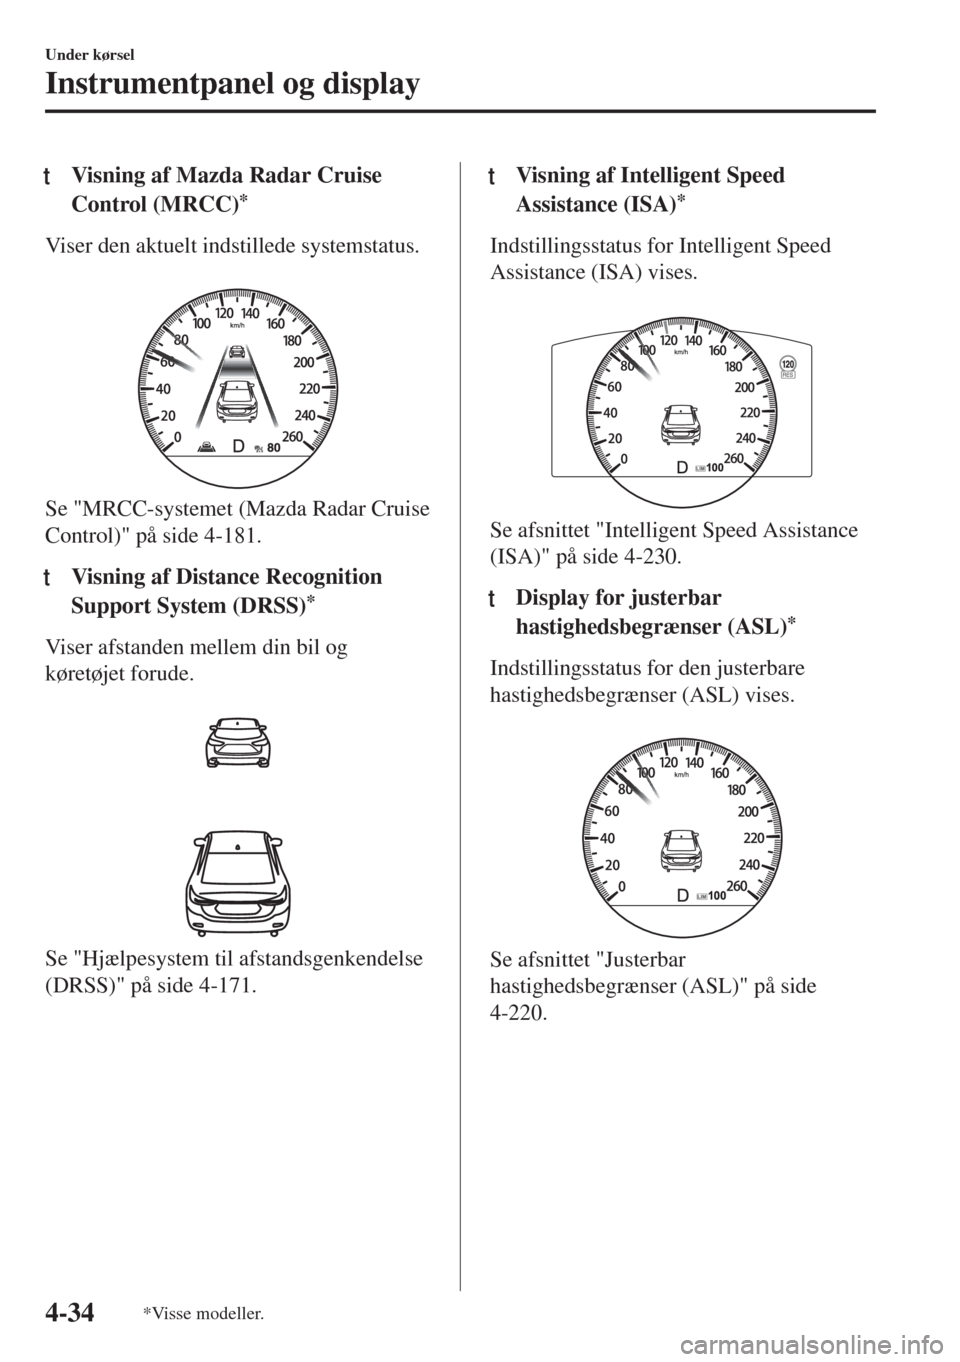 MAZDA MODEL 6 2018  Instruktionsbog (in Danish) tVisning af Mazda Radar Cruise
Control (MRCC)
*
Viser den aktuelt indstillede systemstatus.
 
Se "MRCC-systemet (Mazda Radar Cruise
Control)" på side 4-181.
ttVisning af Distance Recognition
Support 